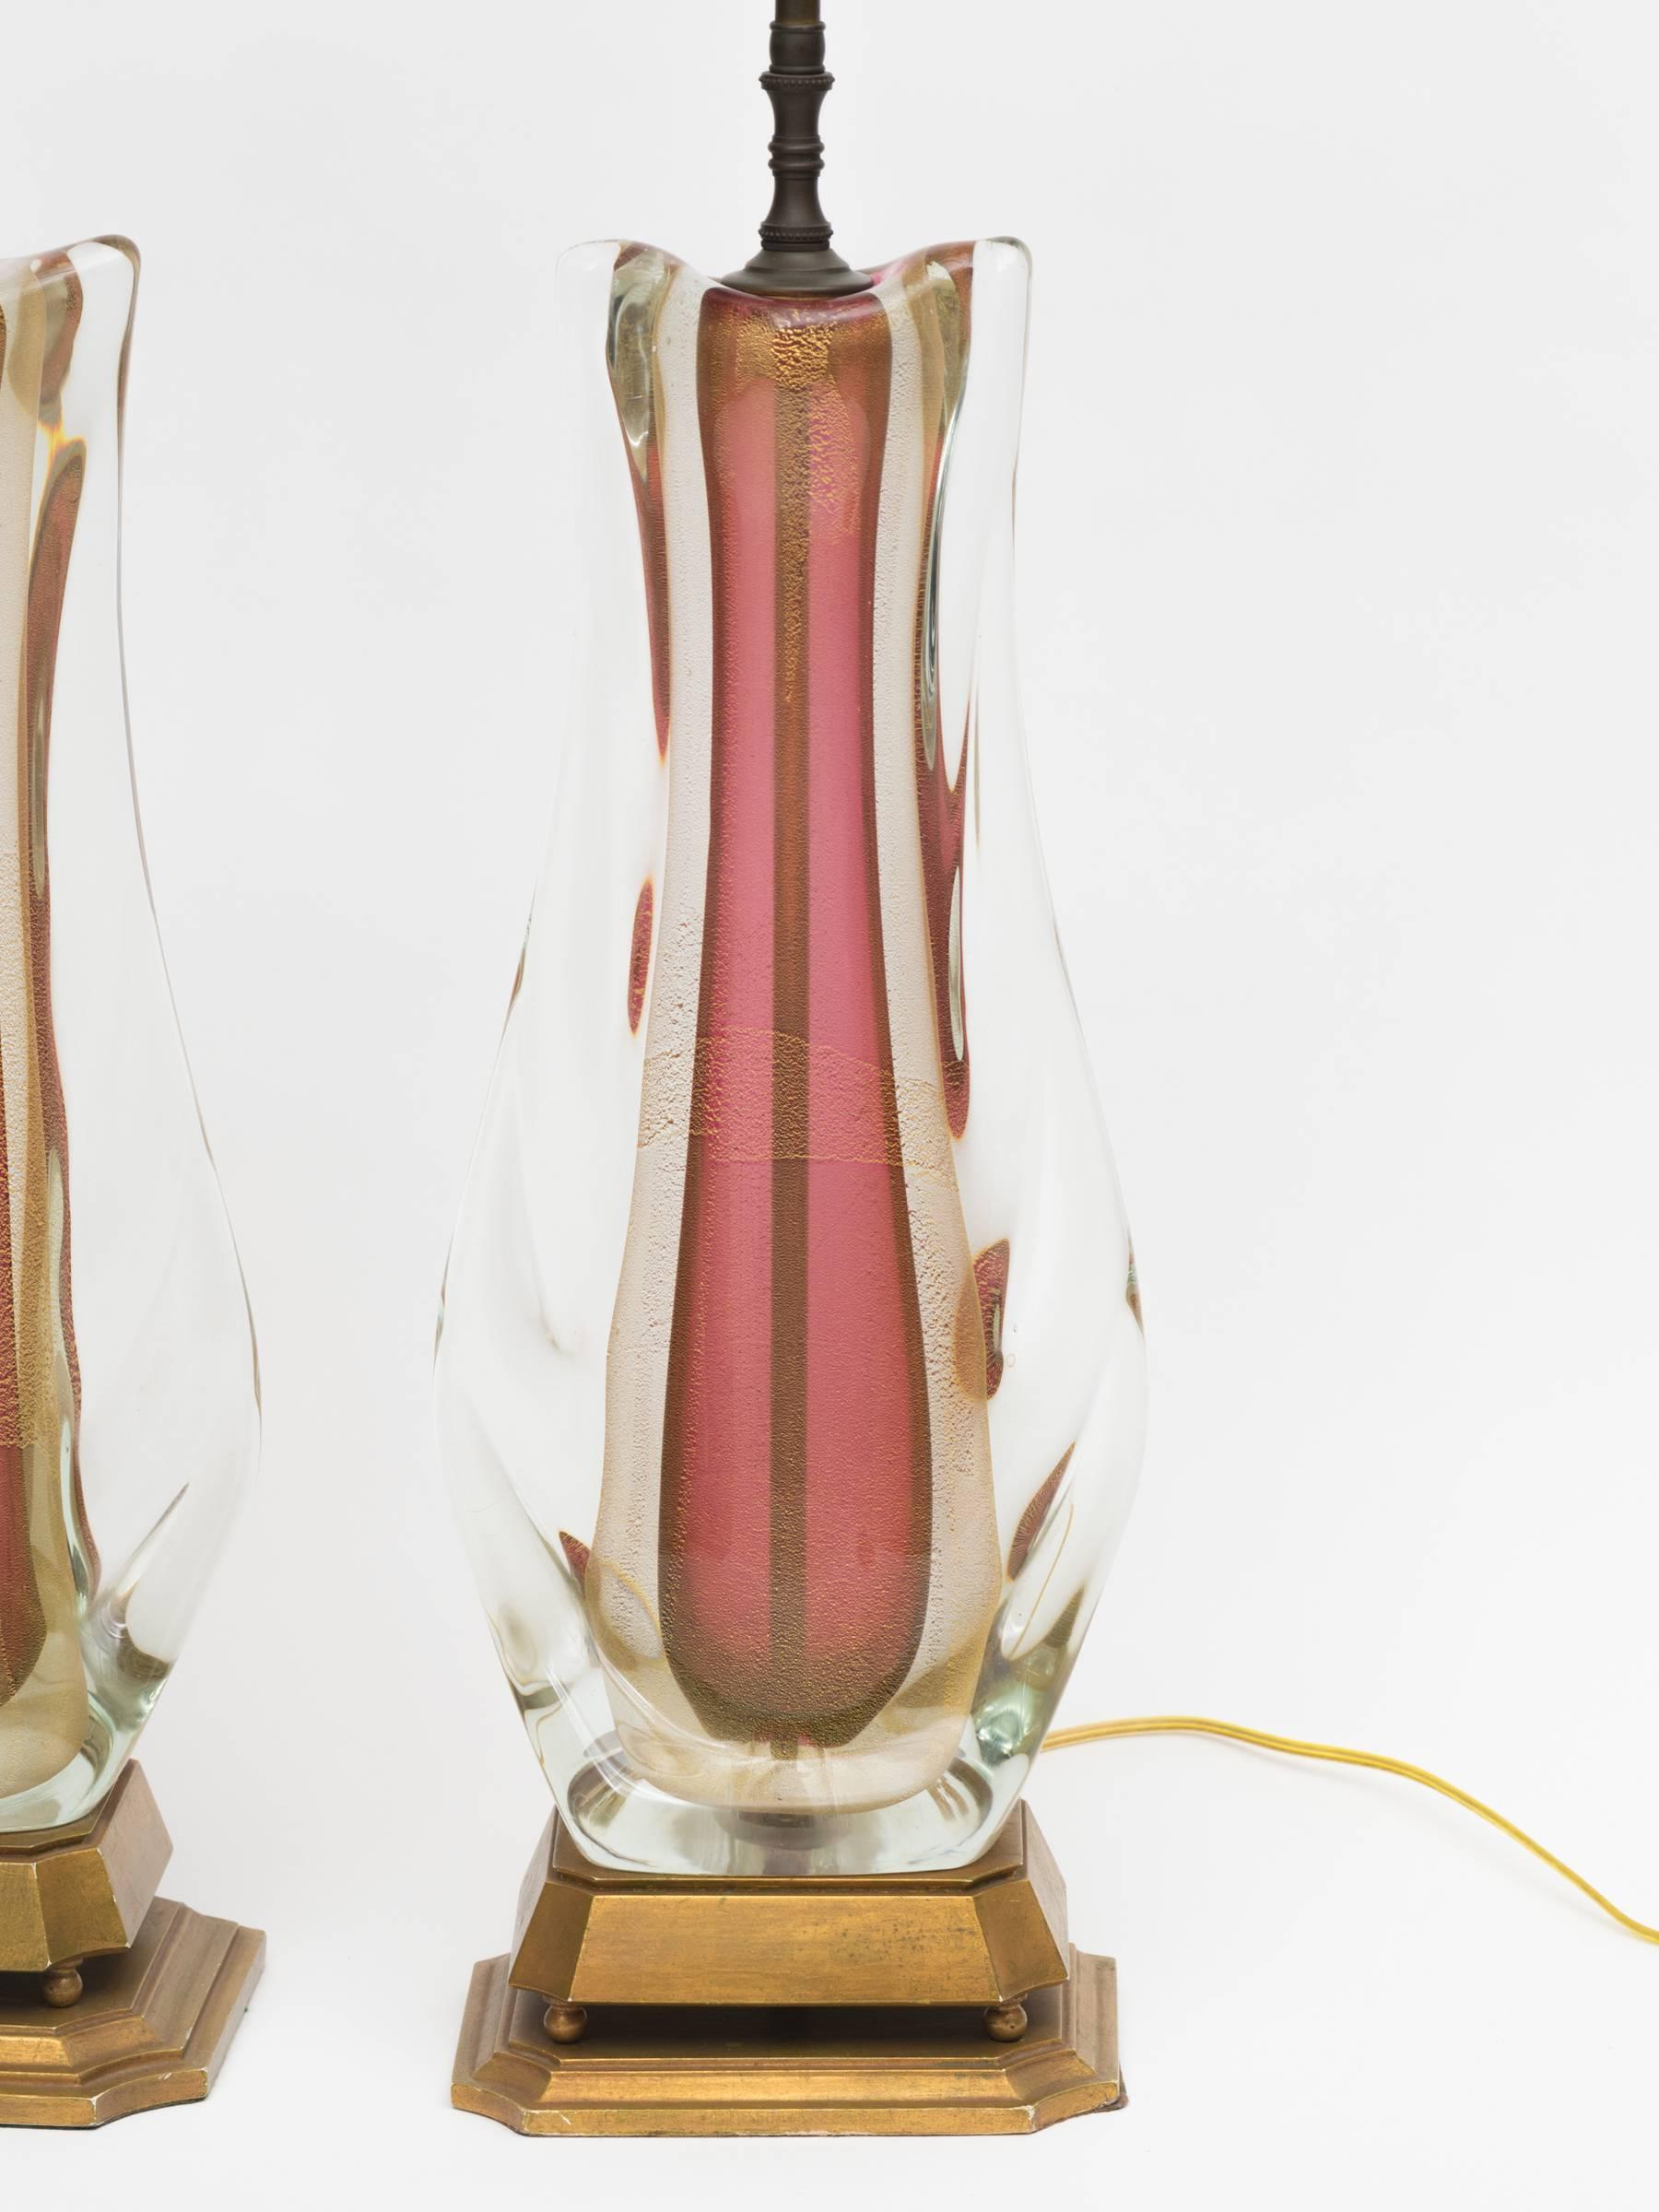 Importante paire de verres Sommerso italiens Murano vintage, épais verre soufflé Sommerso transparent et rose avec inclusions de feuilles d'or, reposant sur des bases en bois doré.